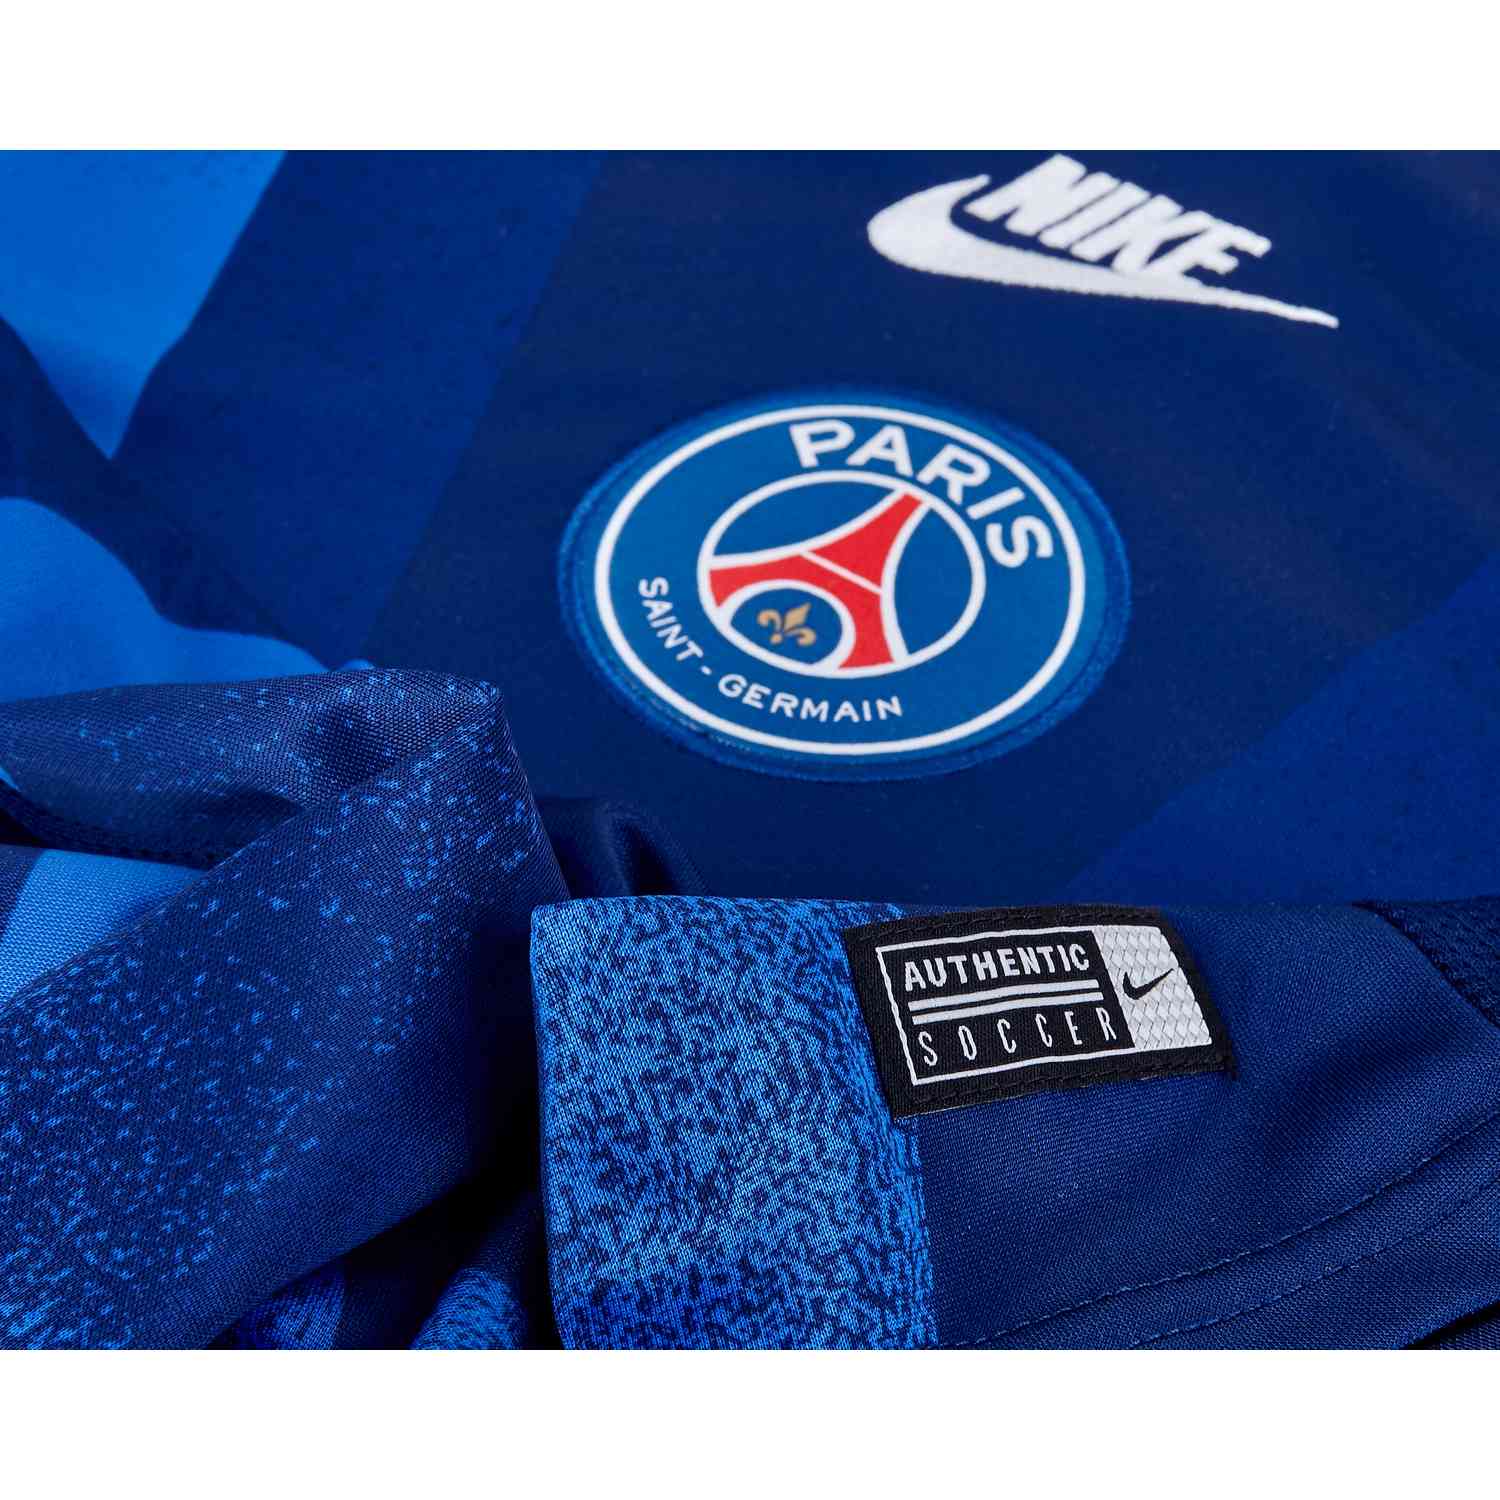 Nike PSG Pre-Match Top - Blue Void/Hyper Royal/White - SoccerPro